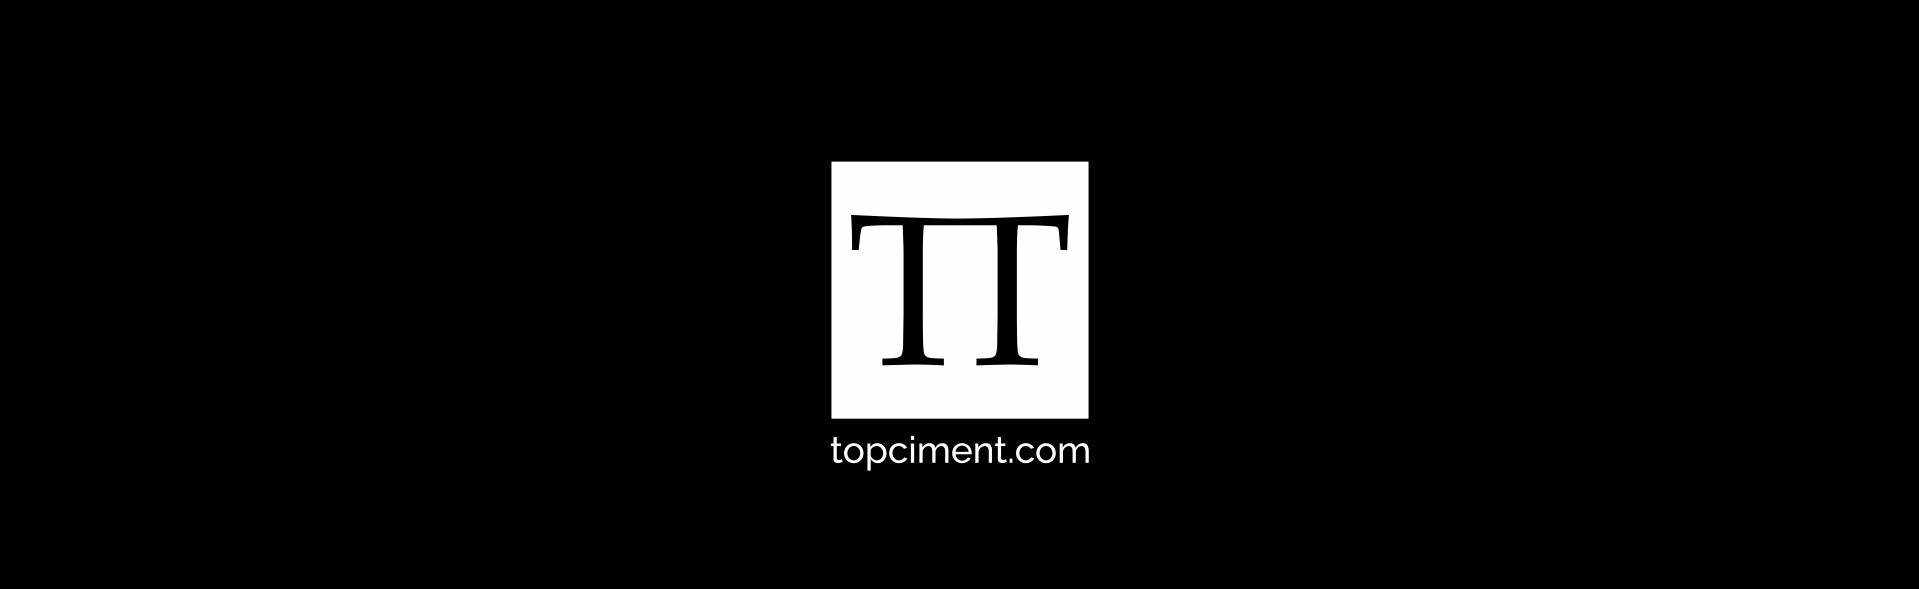 Topciment-logo op een zwarte achtergrond